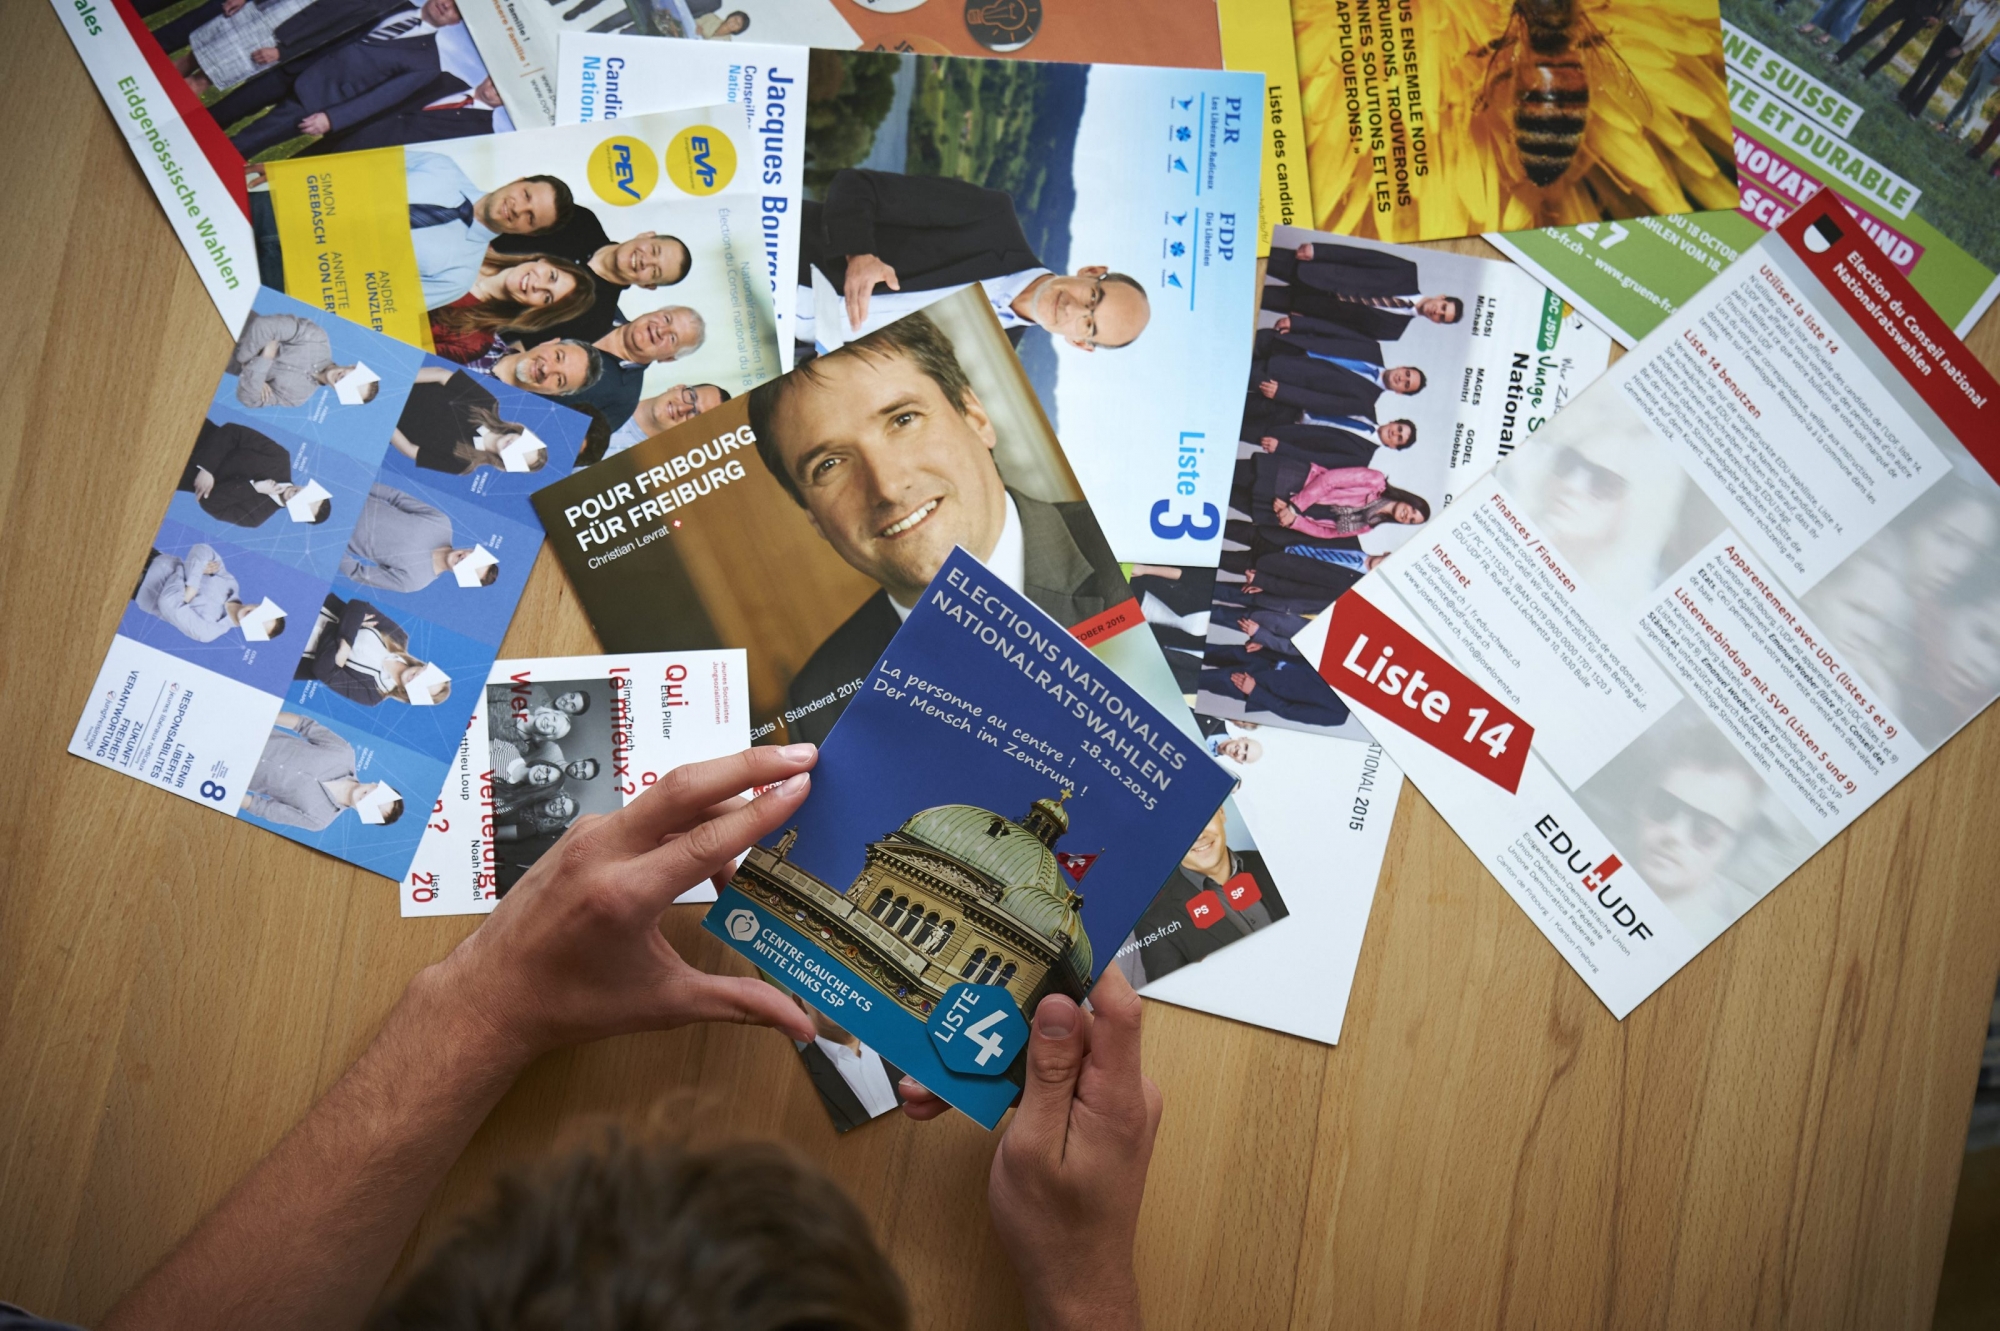 Nationale Wahlen 2015.
Bild: Wahlmaterial der Parteien 2015.

Foto: FN / Charles Ellena, Plaffeien, 28.09.2015 Wahlmaterial der Parteien 2015